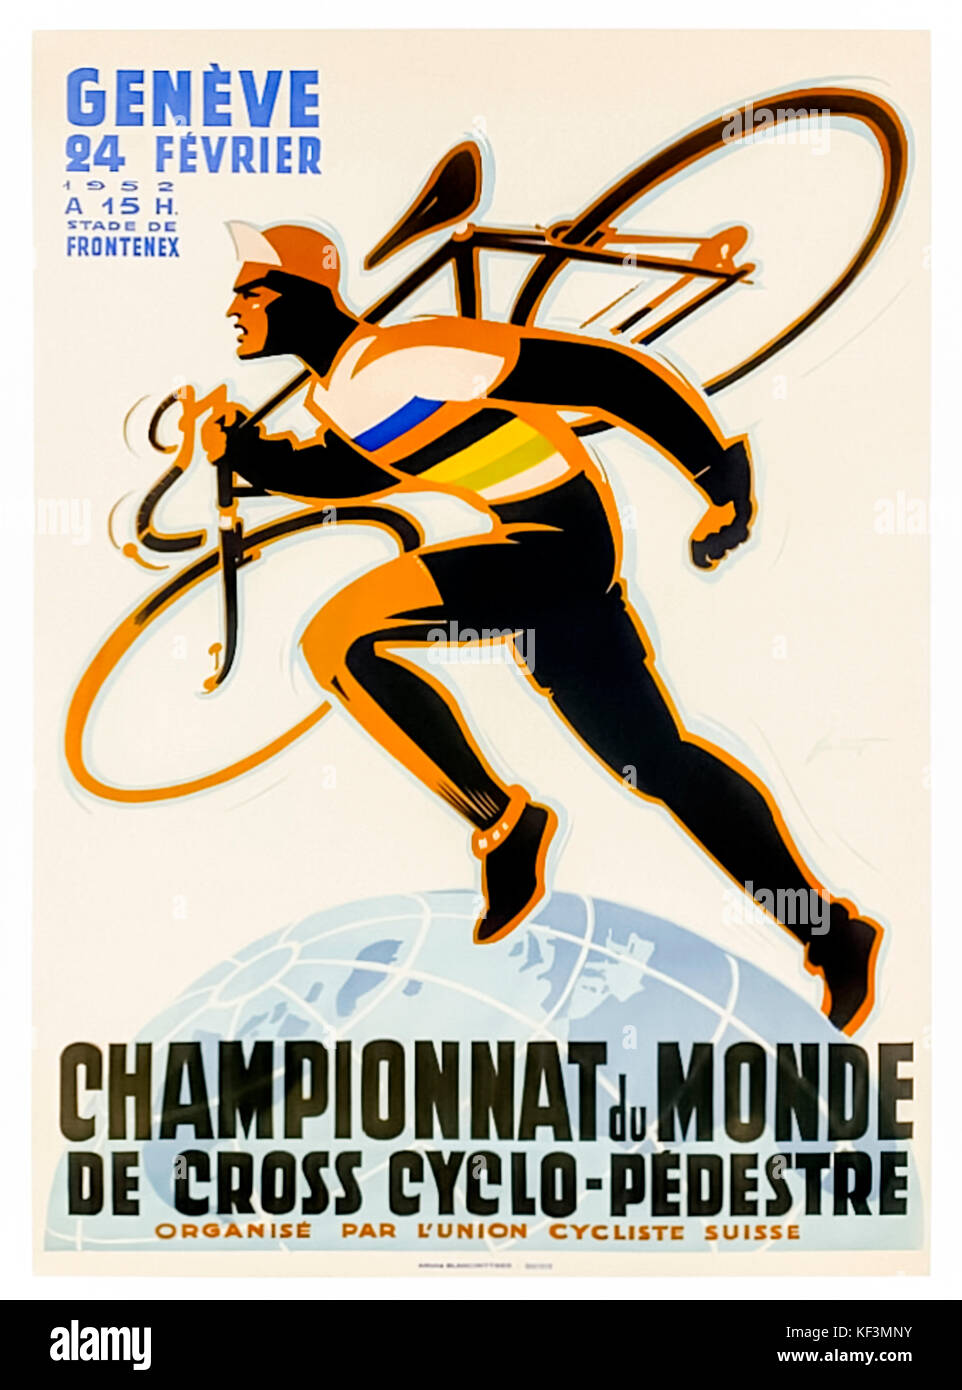 Plakat für die Cyclocross-Weltmeisterschaft 1952 gehaltenen L'Union Cycliste Internationale (UCI) am 24. Februar 1952 in Genf, Schweiz; Design von Noël Fontanet (1898-1982). Stockfoto